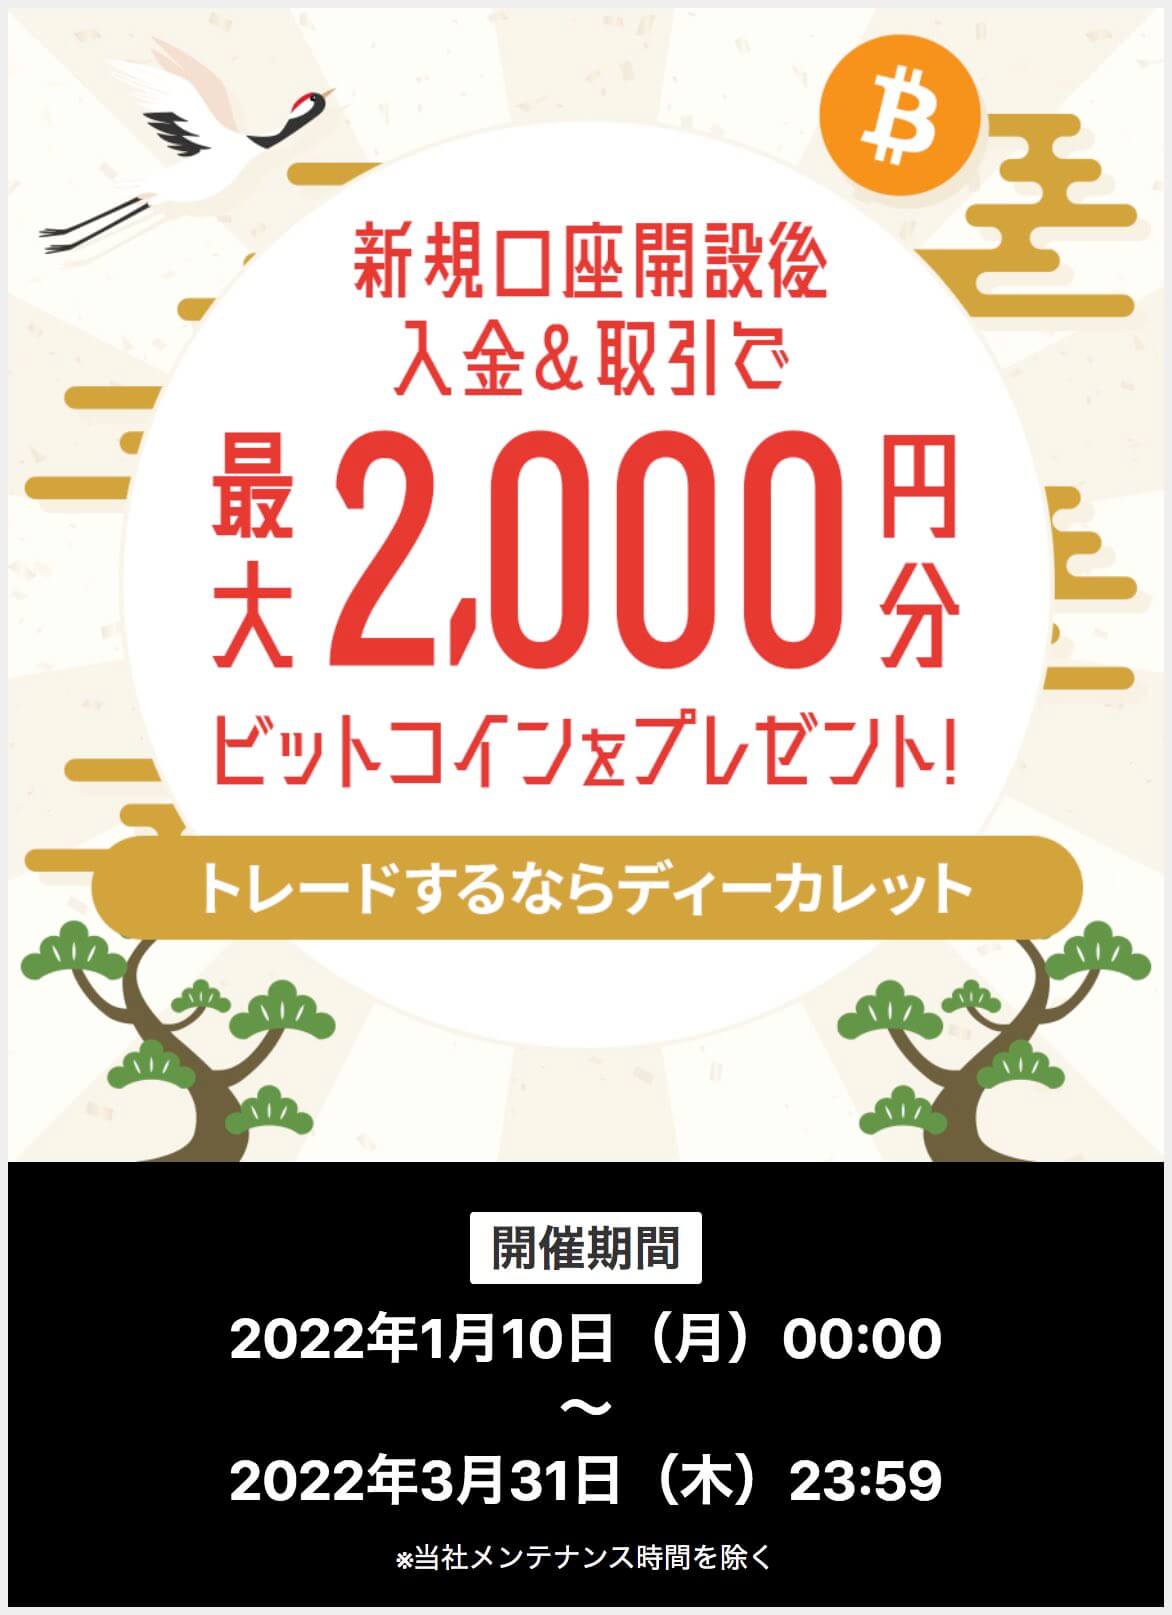 ディーカレット_2,000円キャンペーン